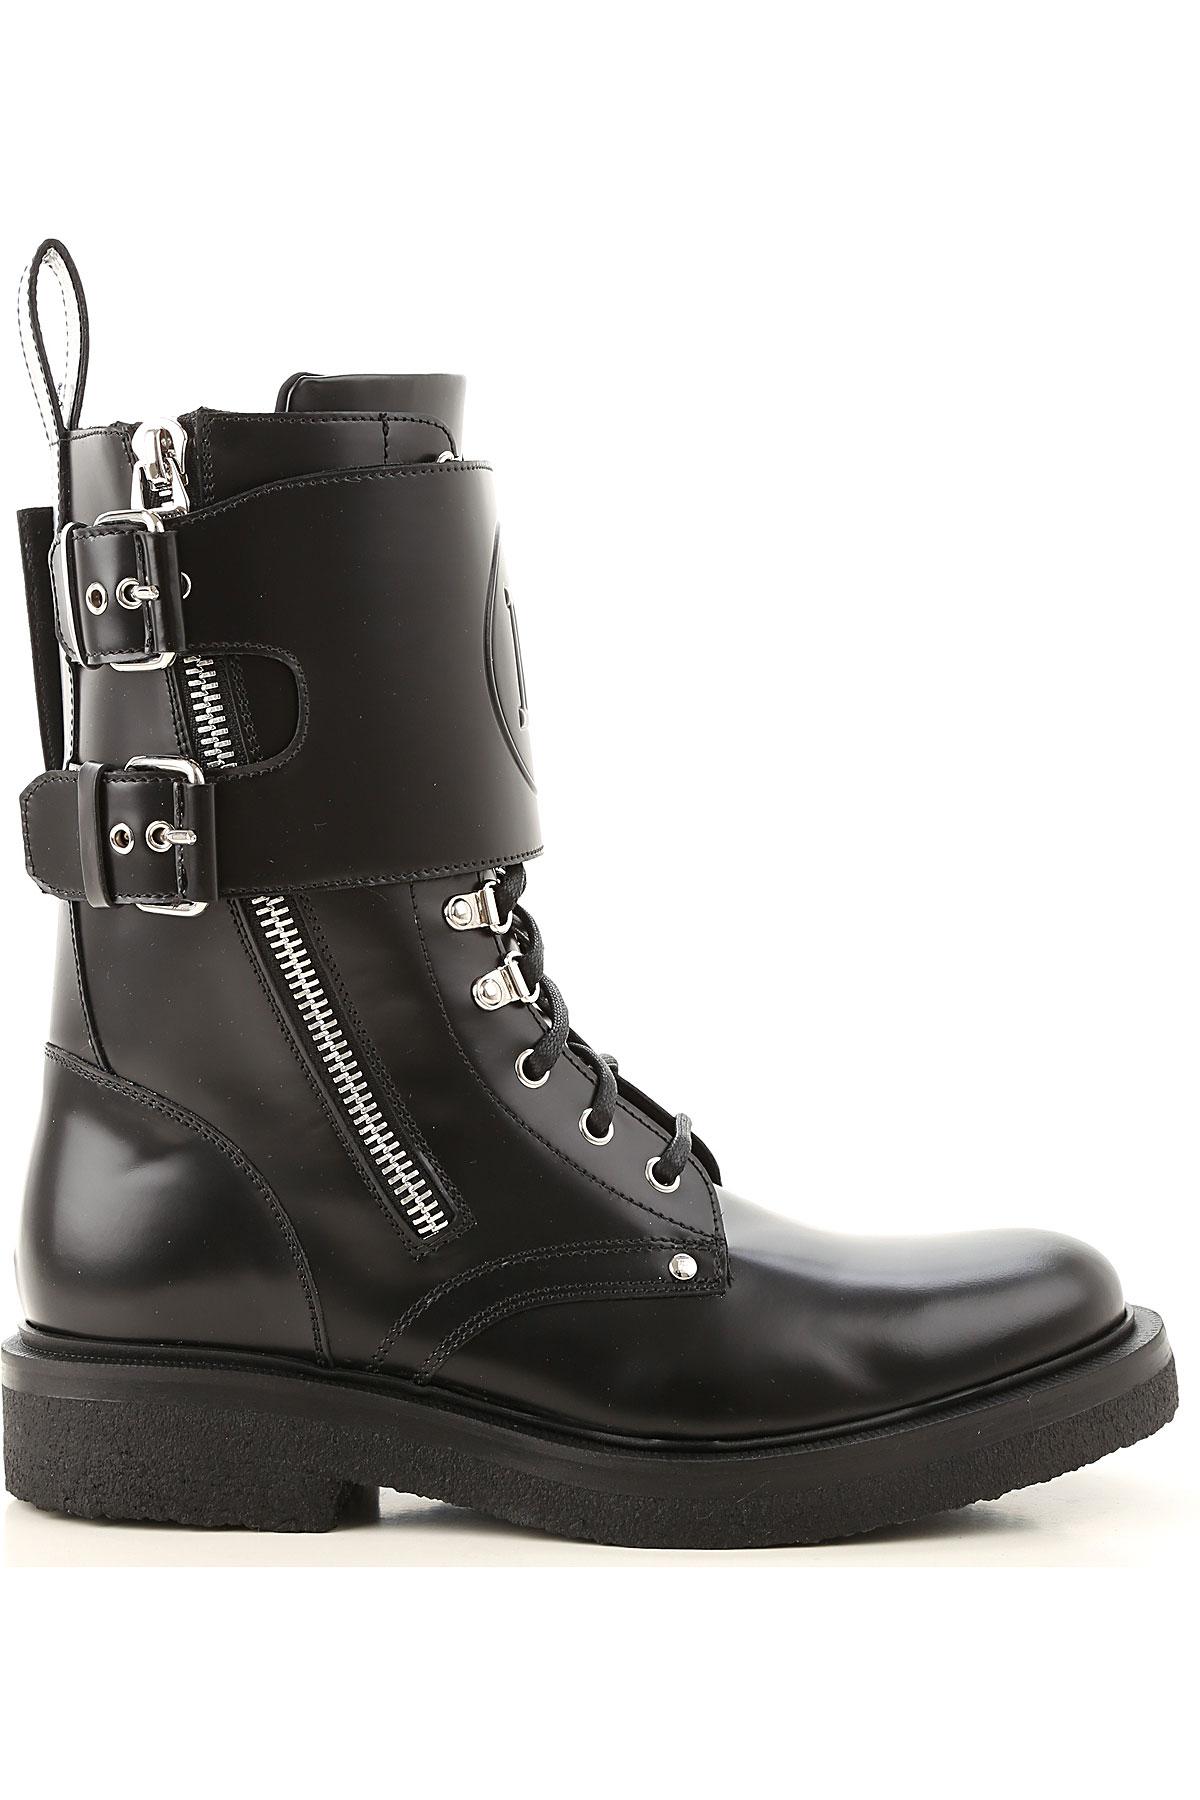 Balmain Boots For Men in Black for Men - Lyst